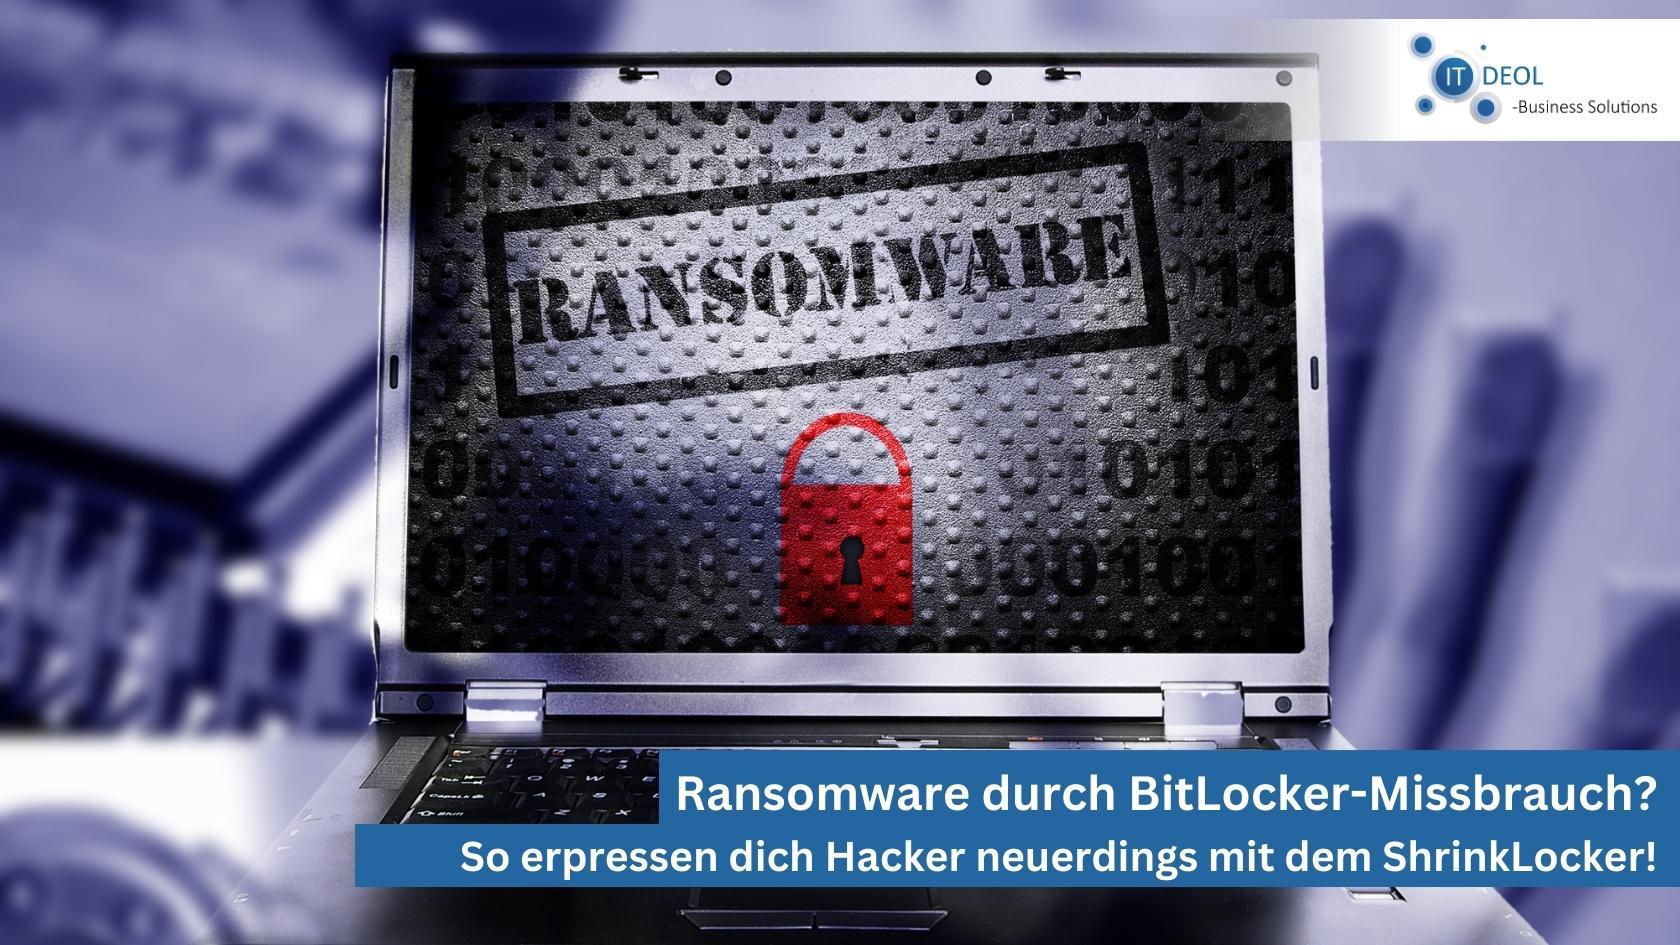 Ransomware-Gefahr: Hacker nutzen BitLocker zur Erpressung